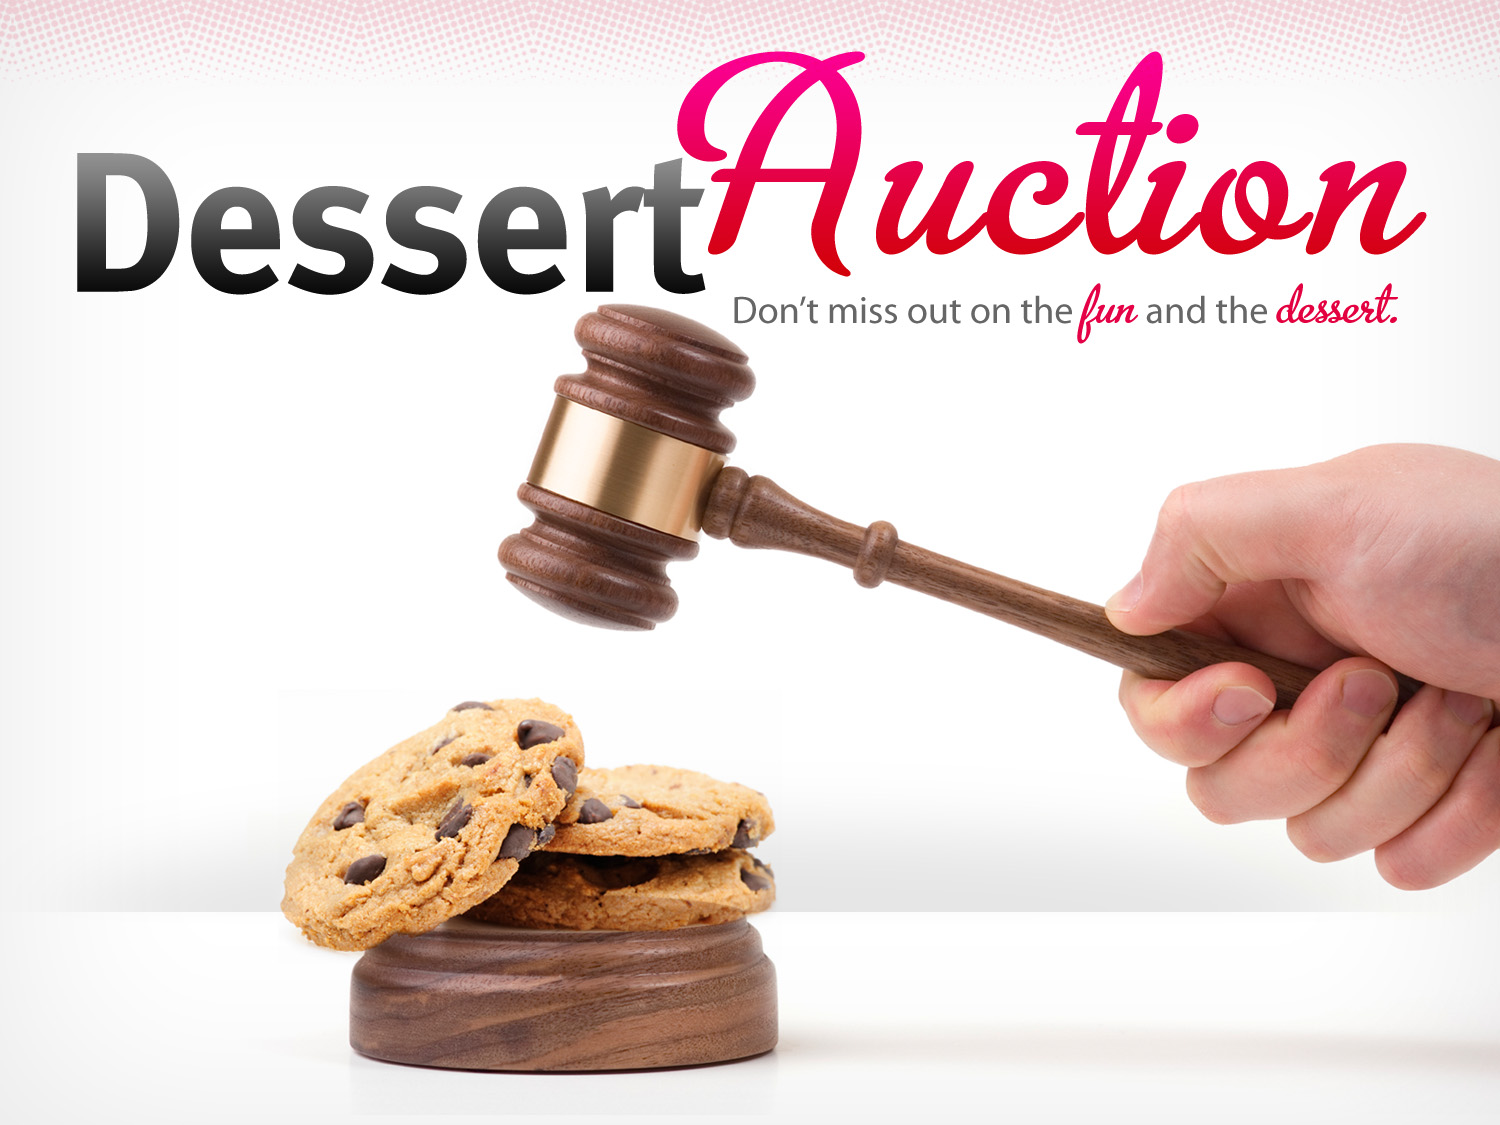 auction clipart dessert auction